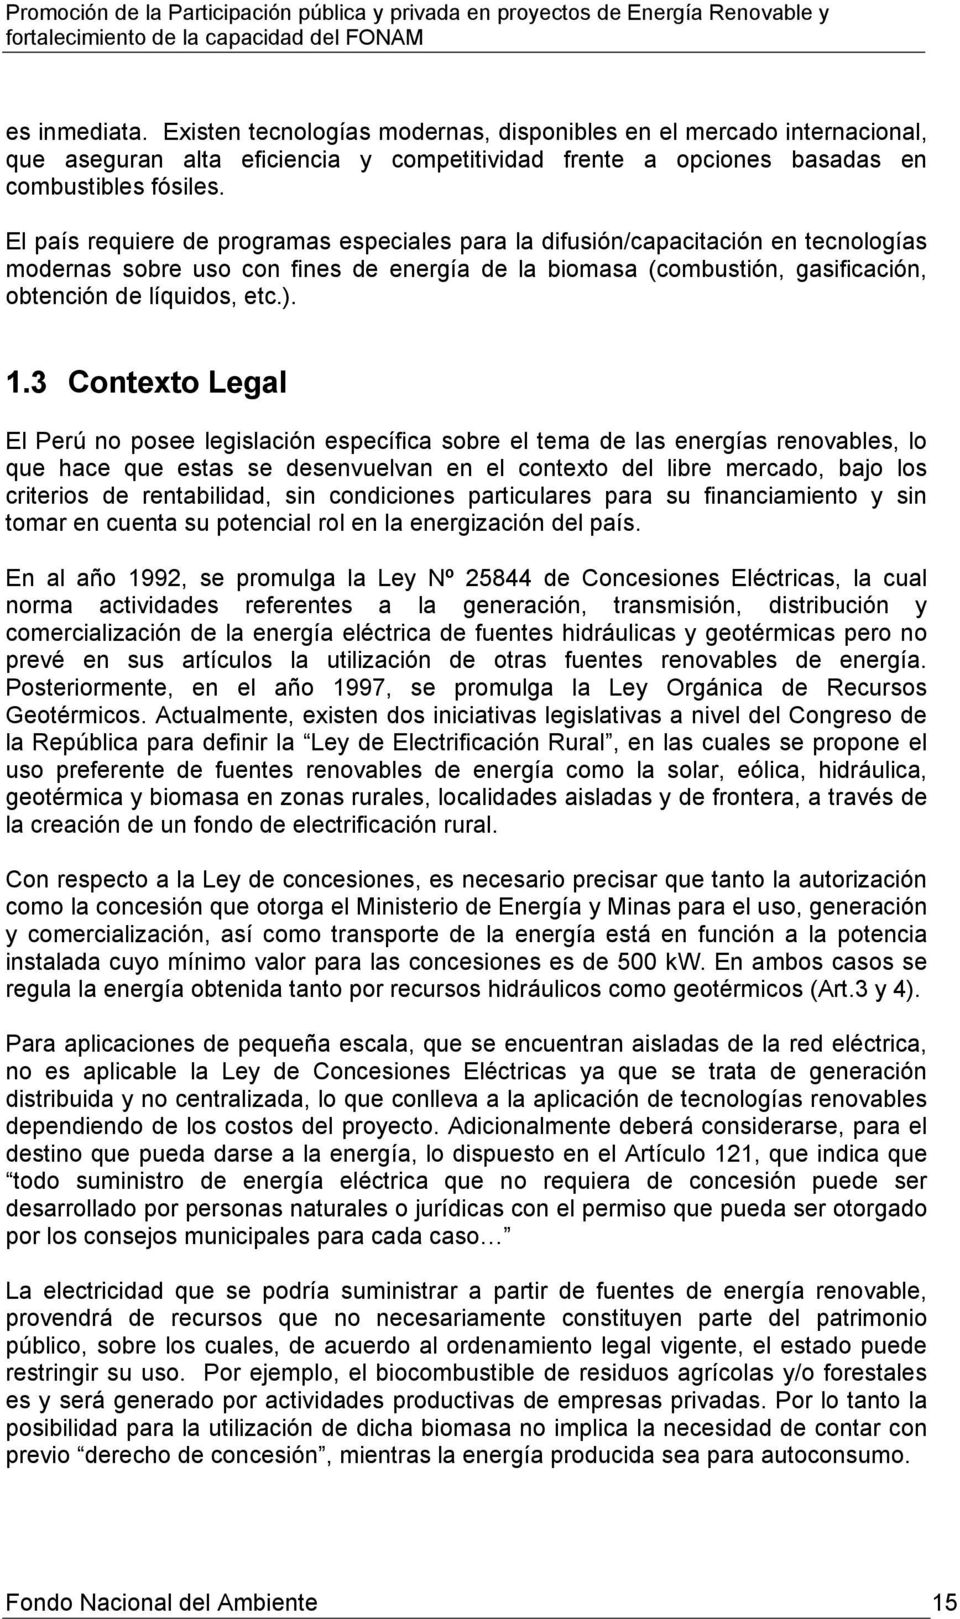 3 Contexto Legal El Perú no posee legislación específica sobre el tema de las energías renovables, lo que hace que estas se desenvuelvan en el contexto del libre mercado, bajo los criterios de